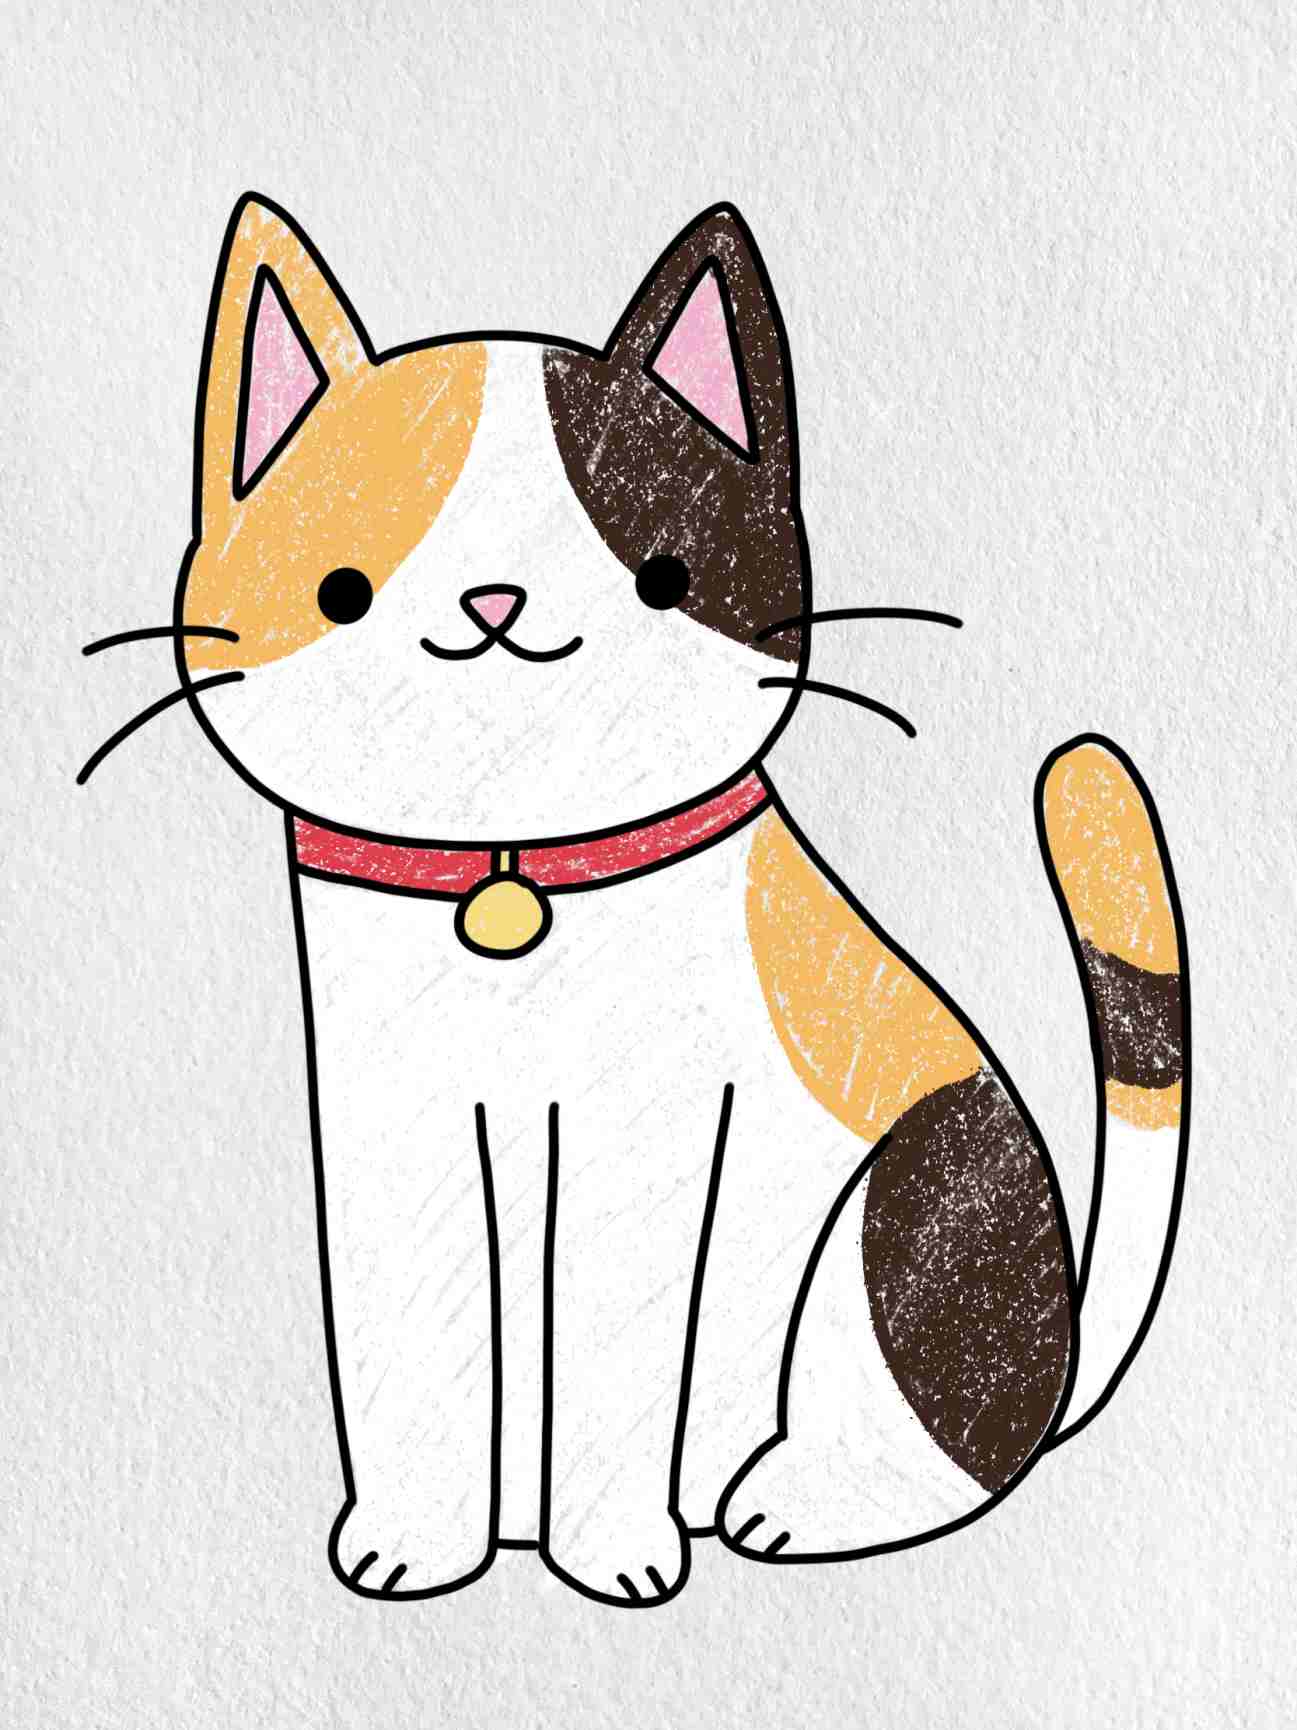 Ứng dụng How to Draw Kawaii Drawings  Cách vẽ con vật hoạt hình đáng yêu   Link tải free cách sử dụng